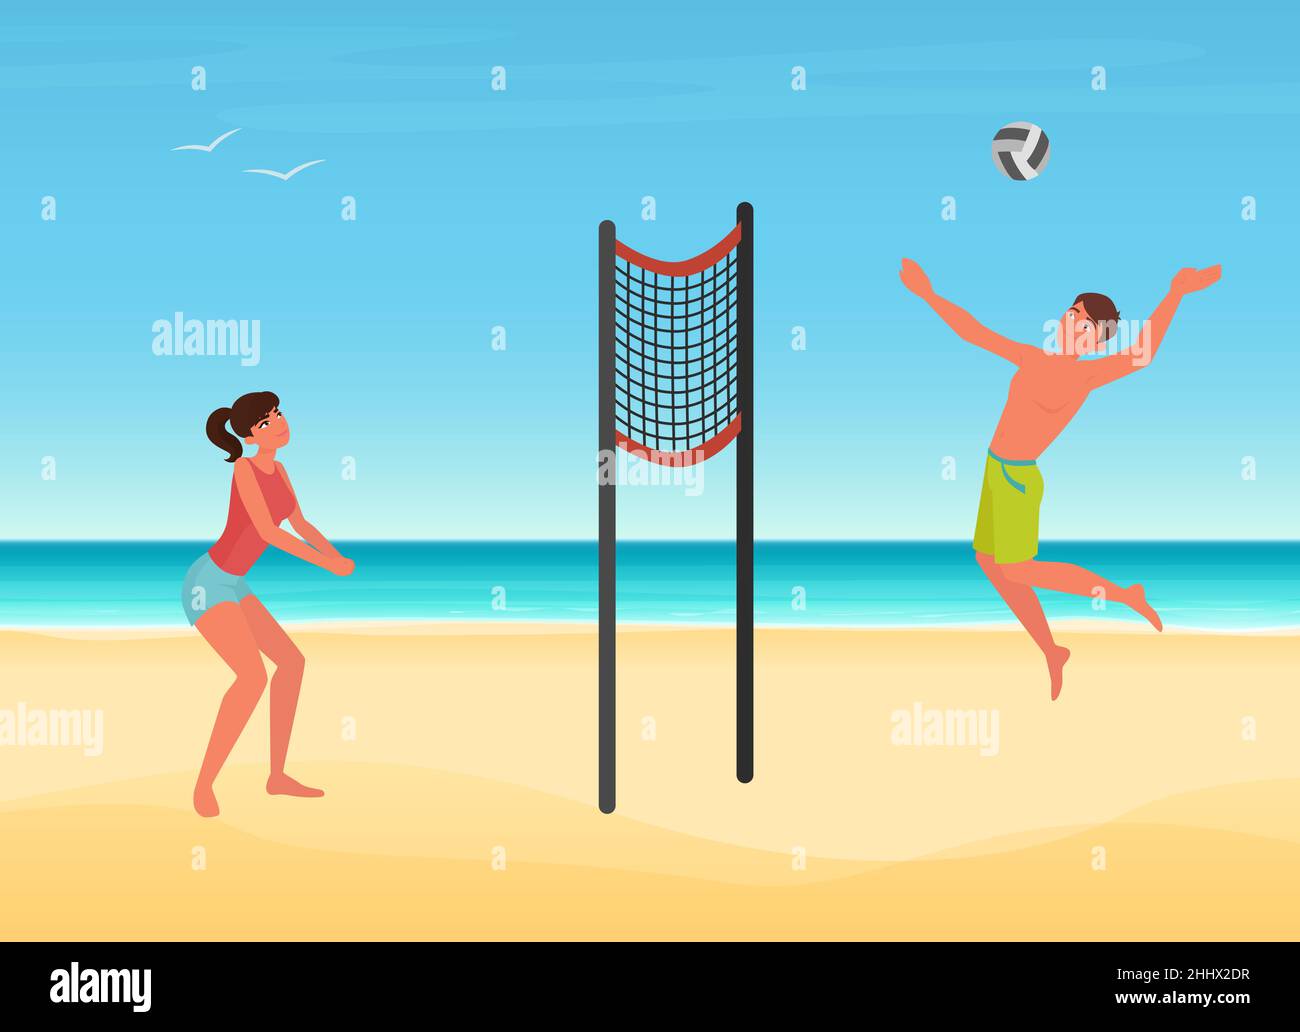 Les couples jouent au volley-ball sur la plage d'été de l'île tropicale illustration vectorielle.Dessin animé jeune femme homme joueur personnage jouant ballon, jumpi Illustration de Vecteur